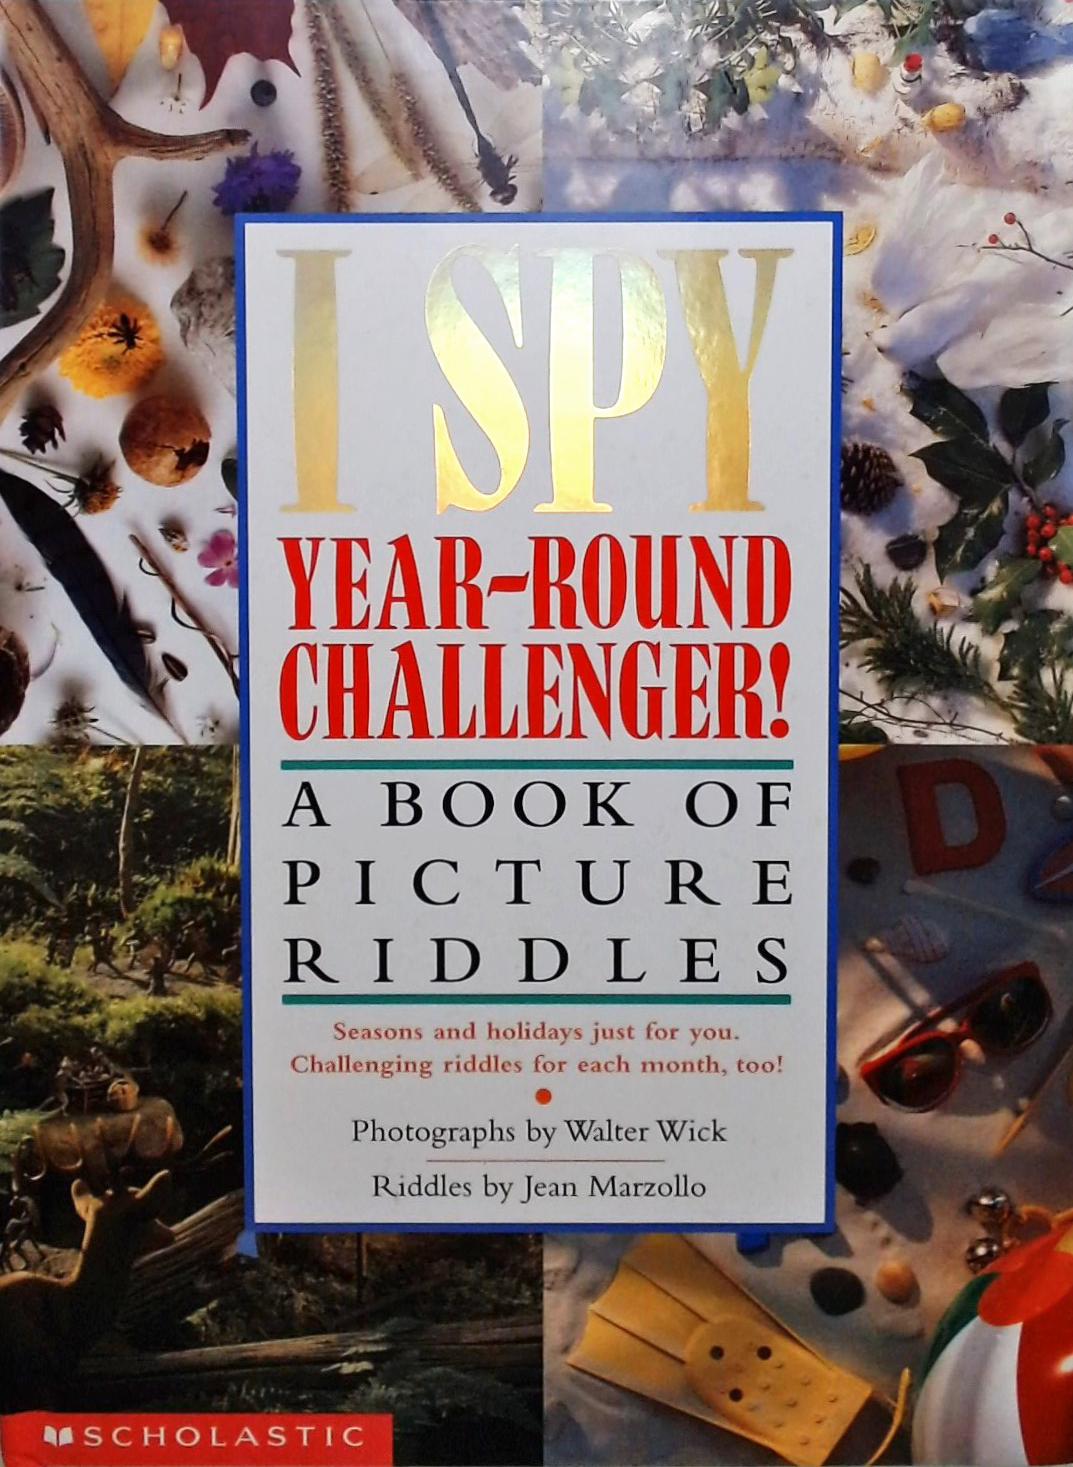 I Spy - Year Round Challenger